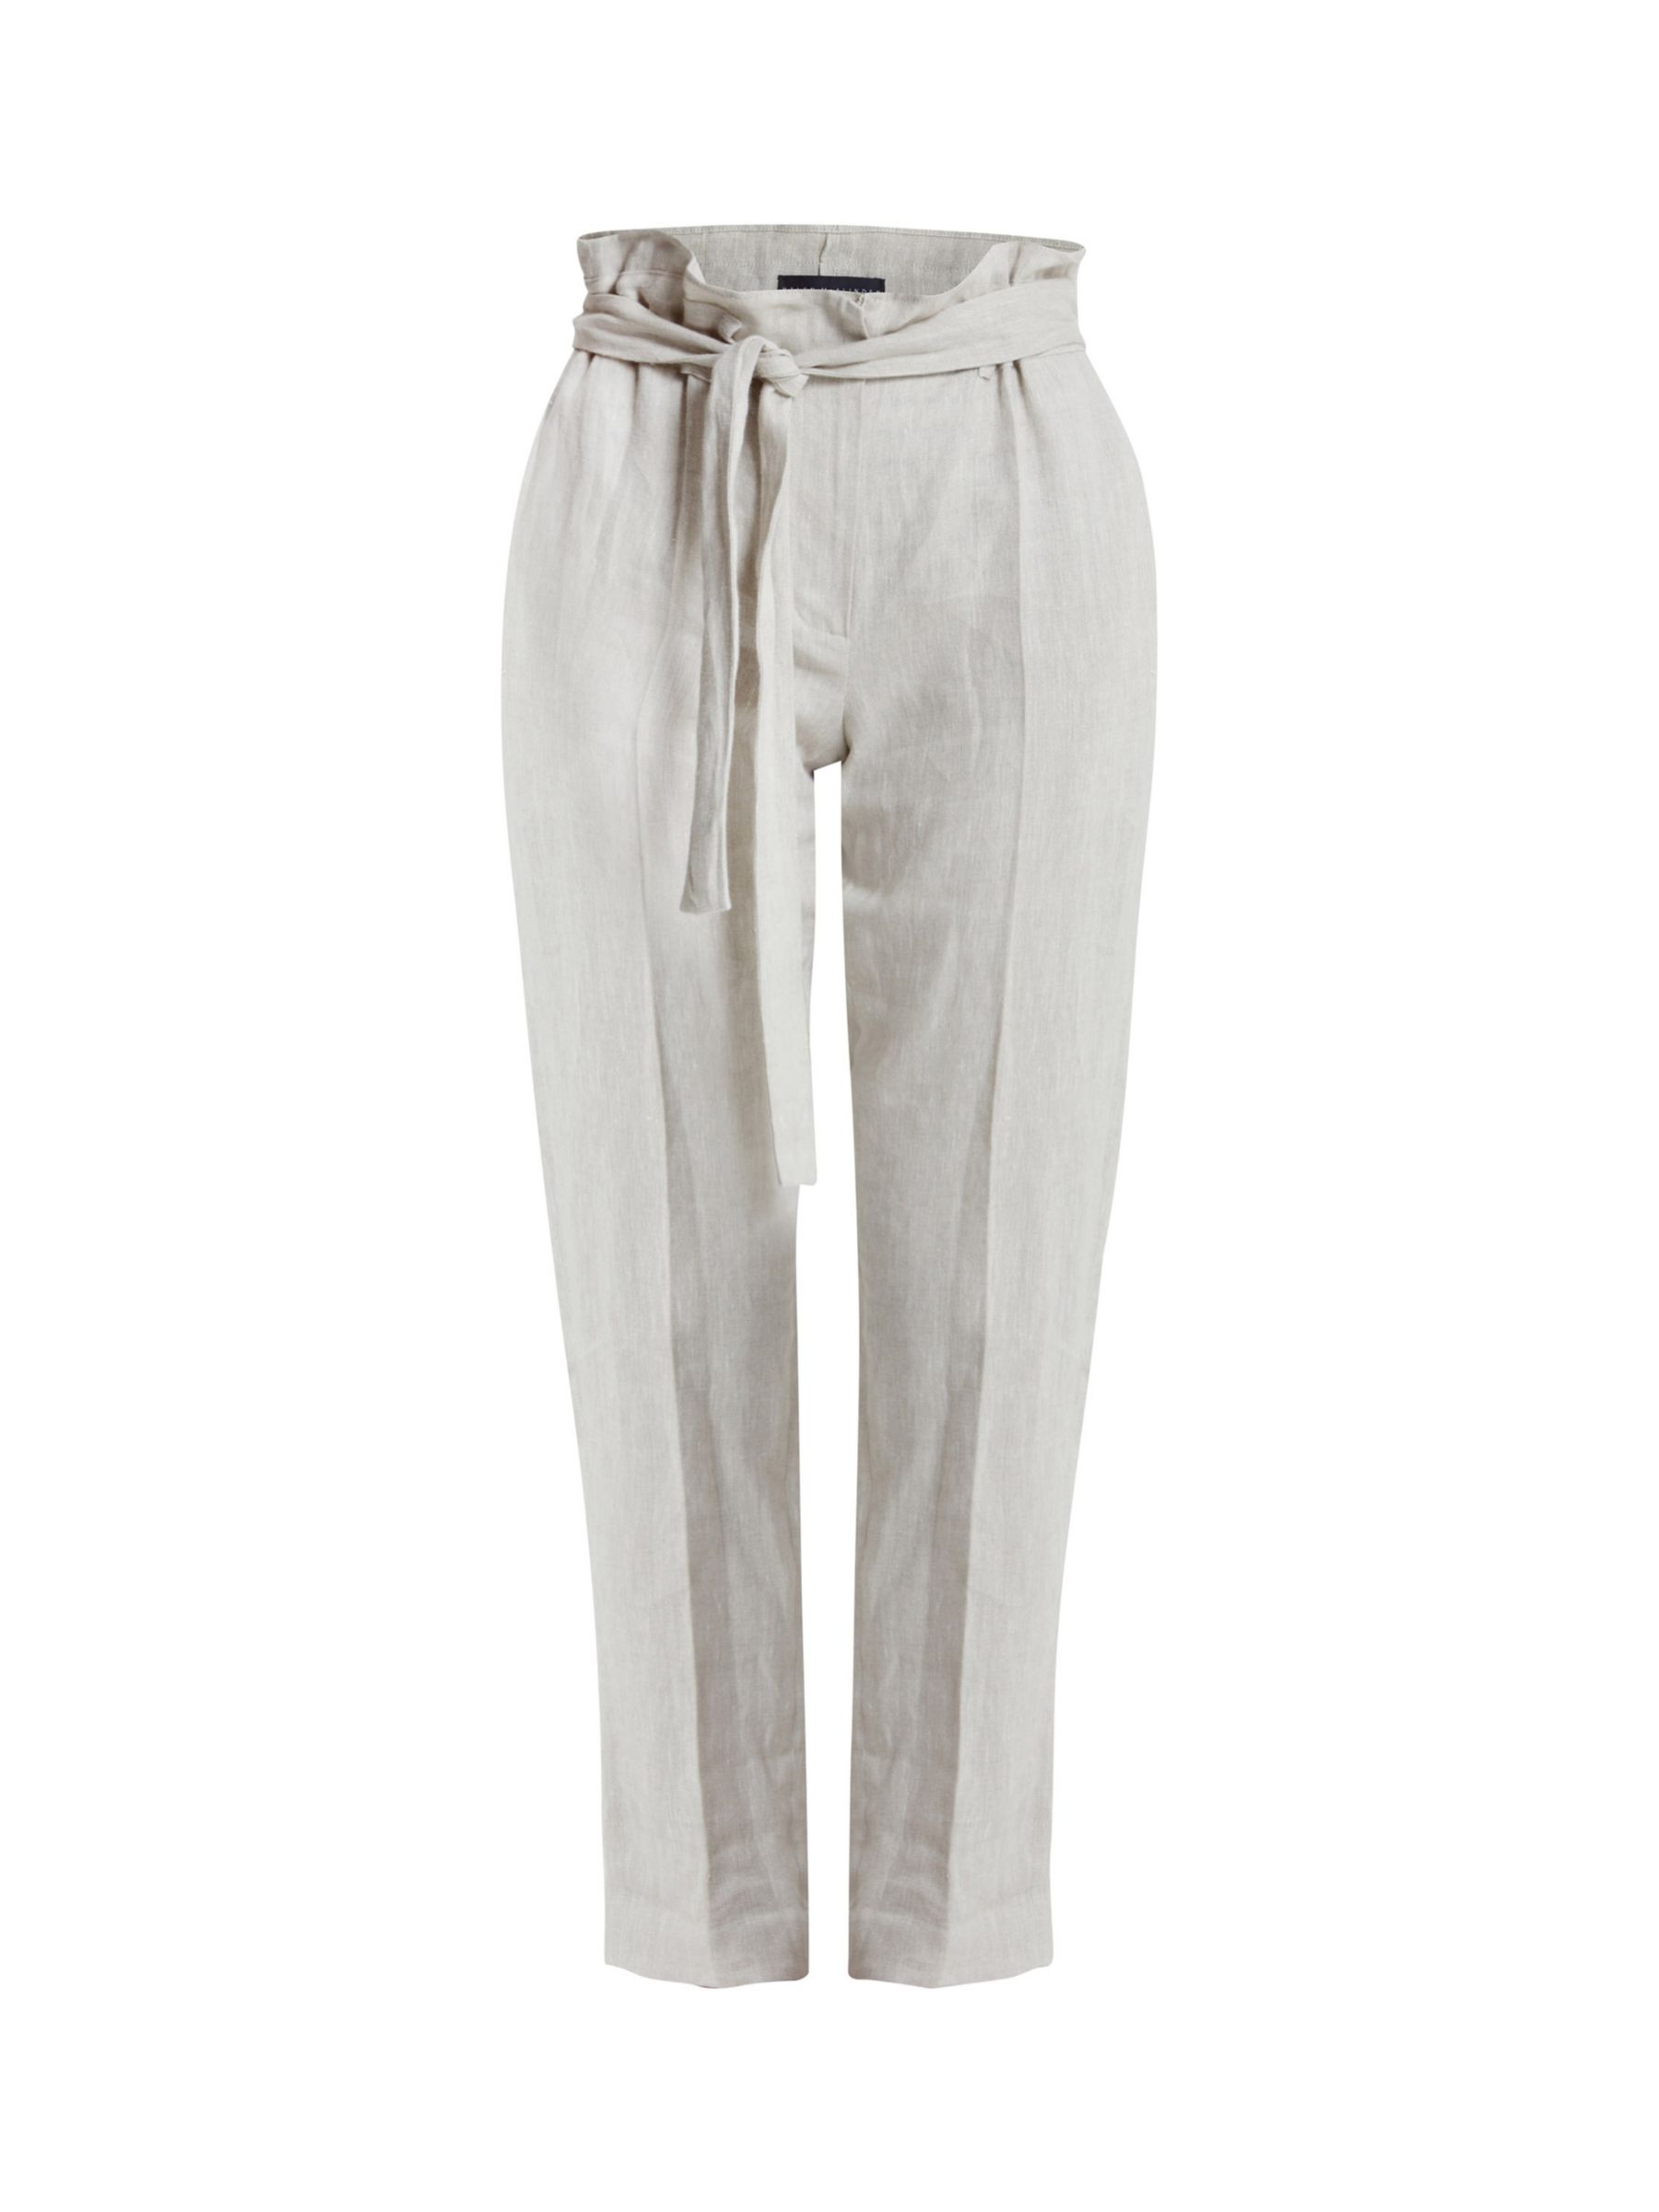 Helen McAlinden Brenda Plain Linen Trousers, Oatmeal, S